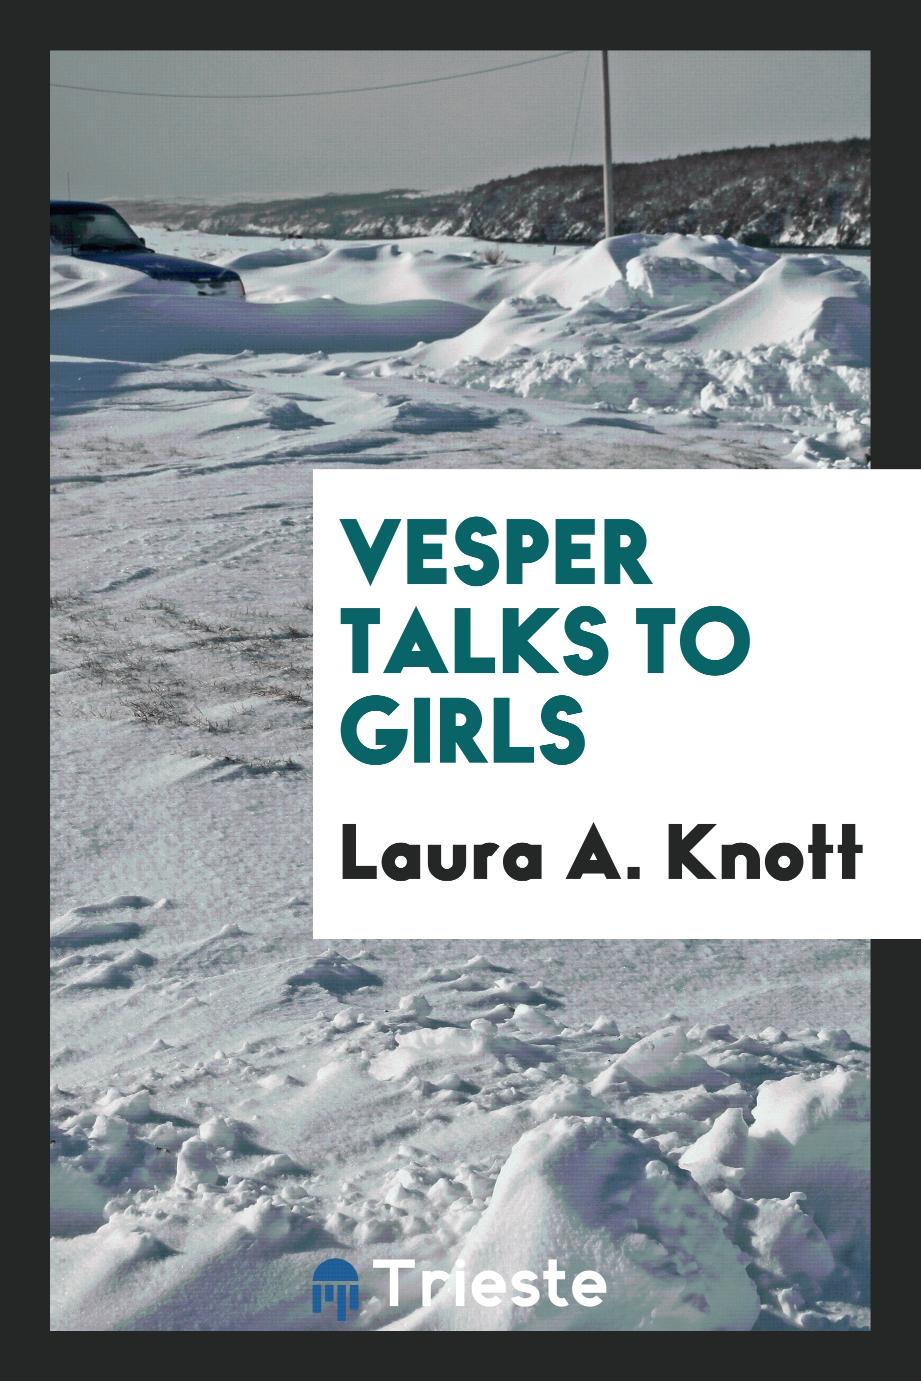 Vesper talks to girls